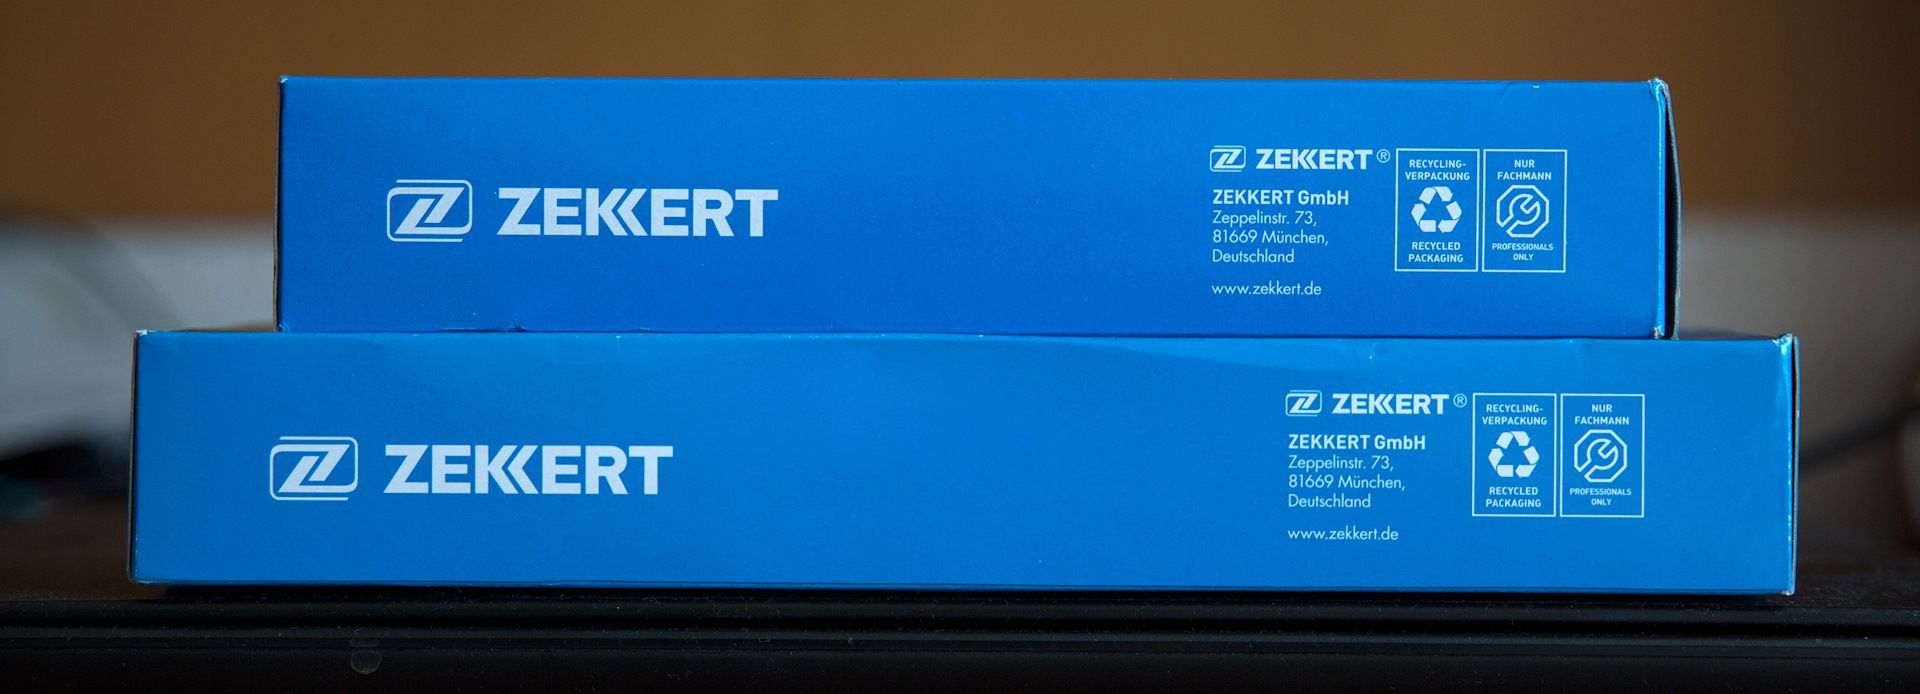 Производитель zekkert отзывы. Zekkert if3020k. Фильтр салона Zekkert if-3020k. Zekkert if3449k. Зеккерт ИФ 3020.